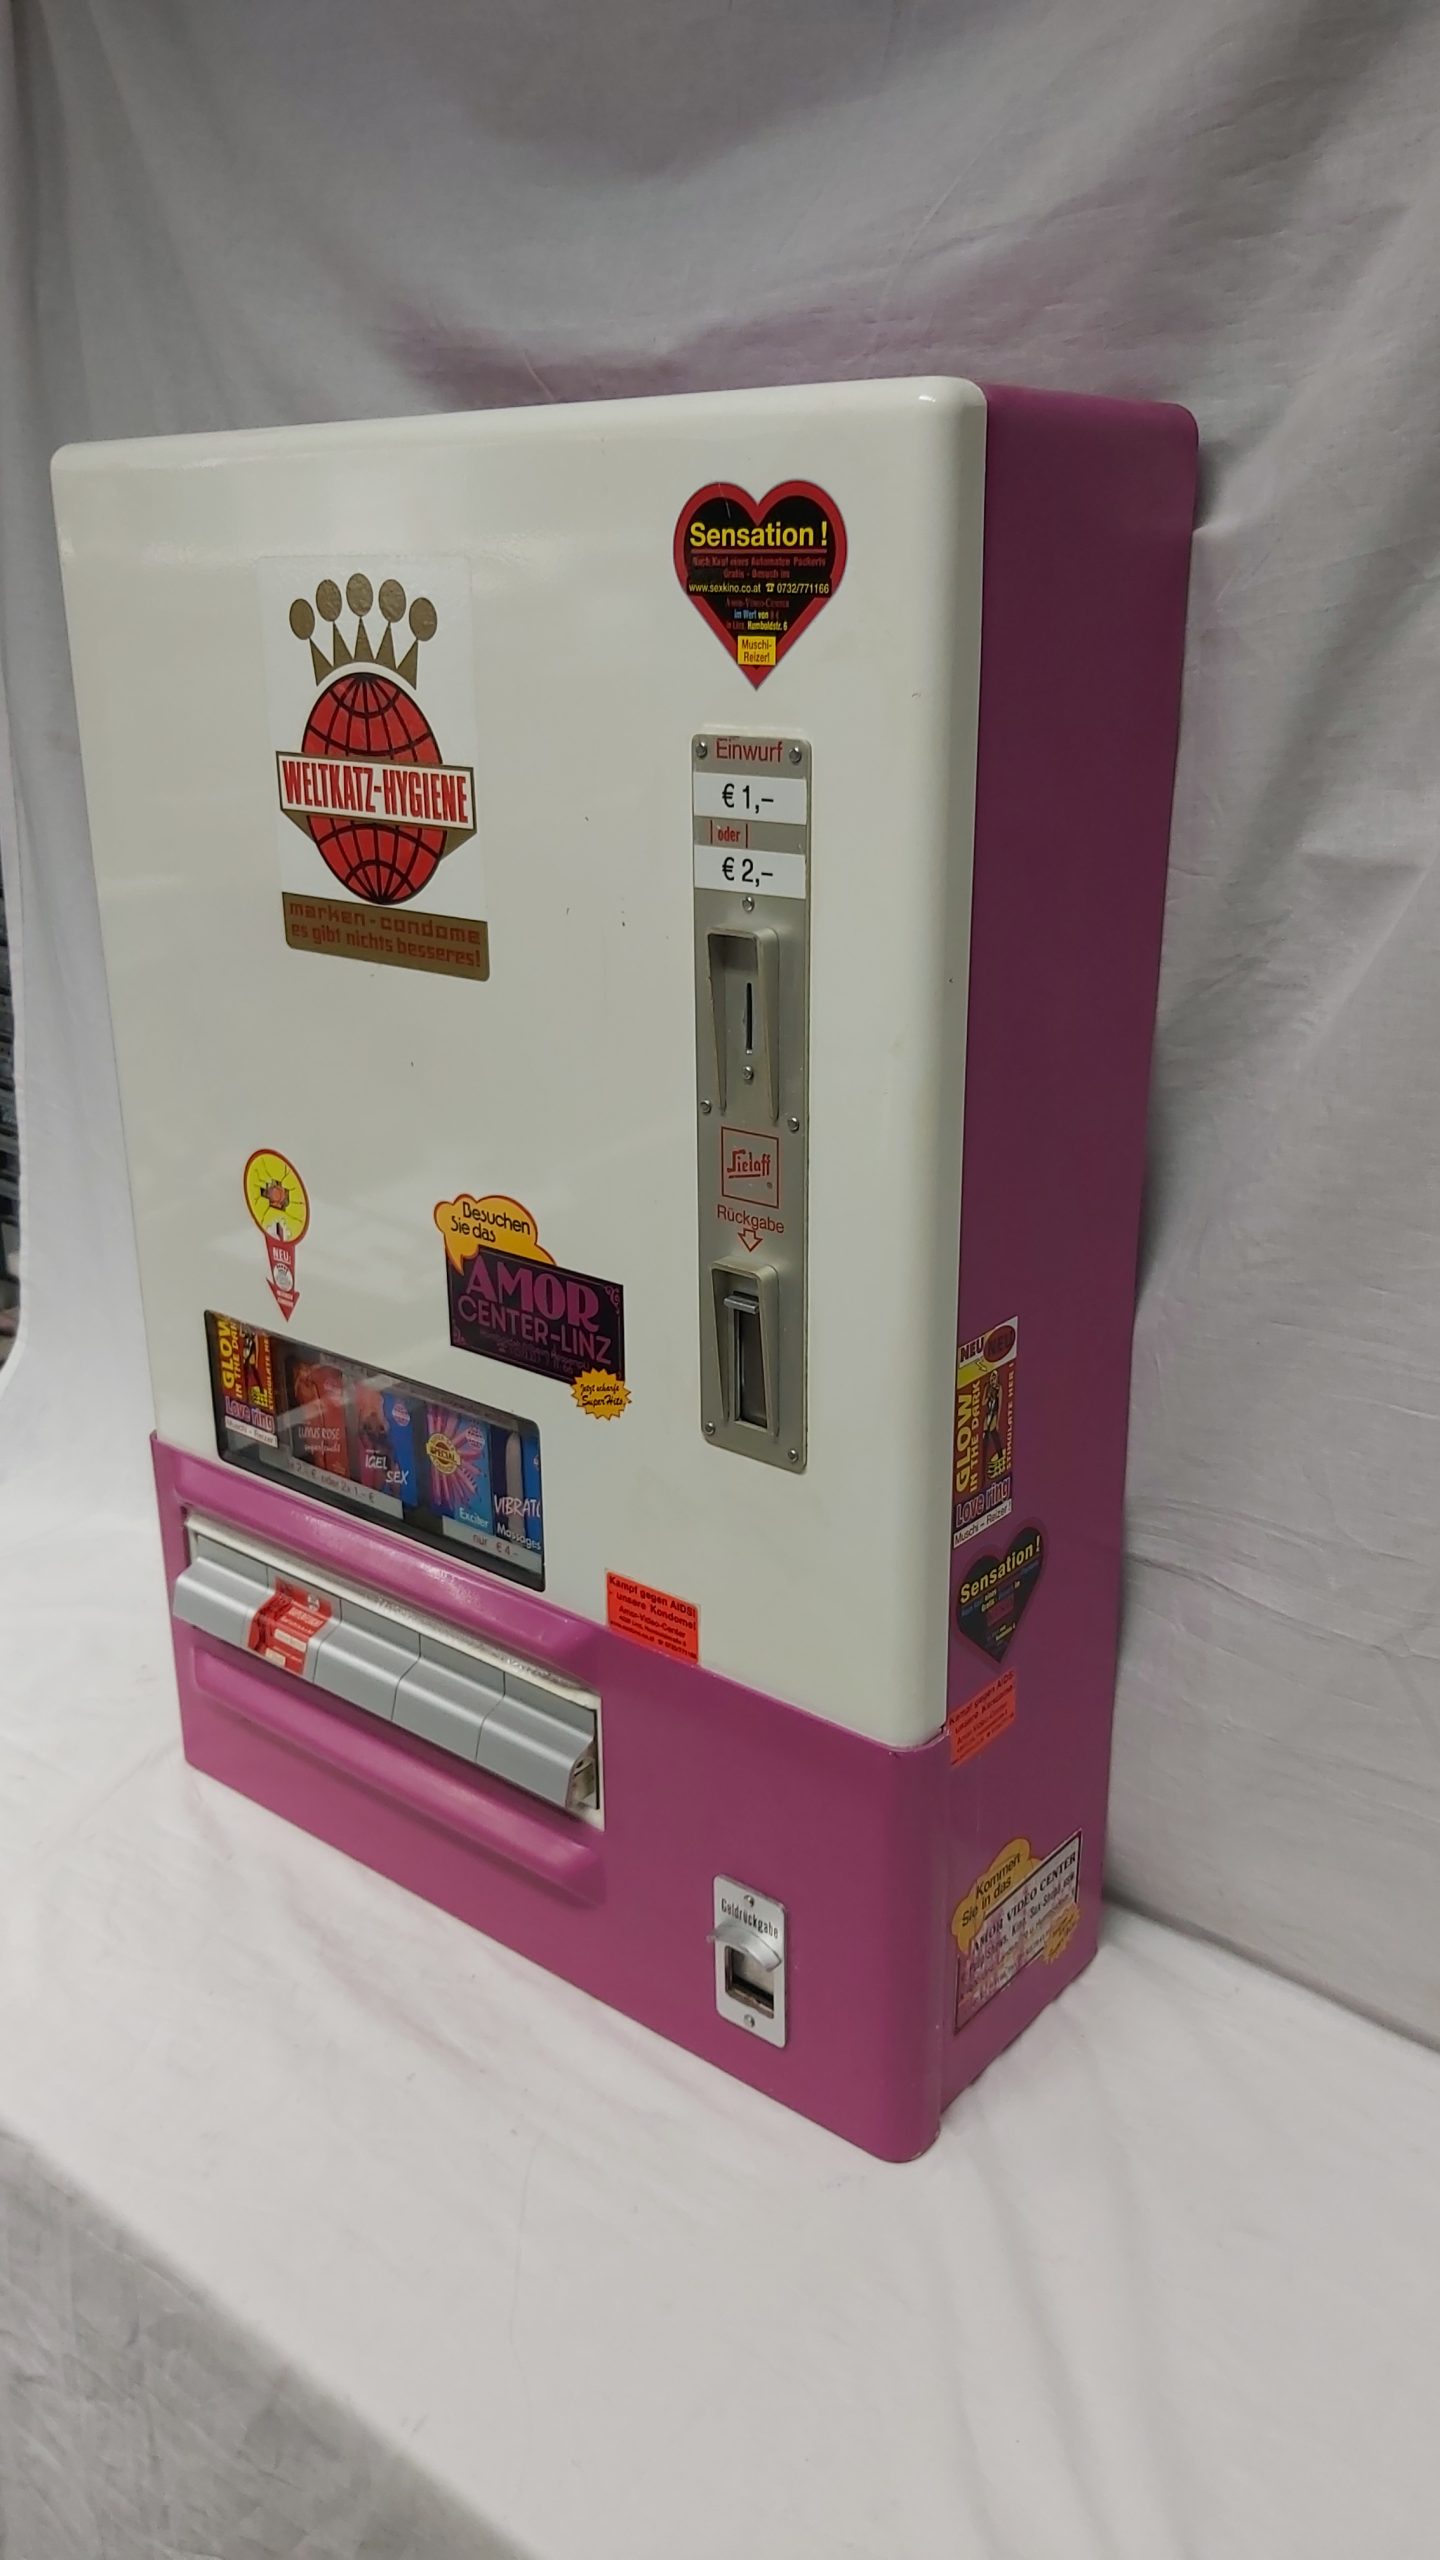 Kondomautomat Sielaff 5 Schacht